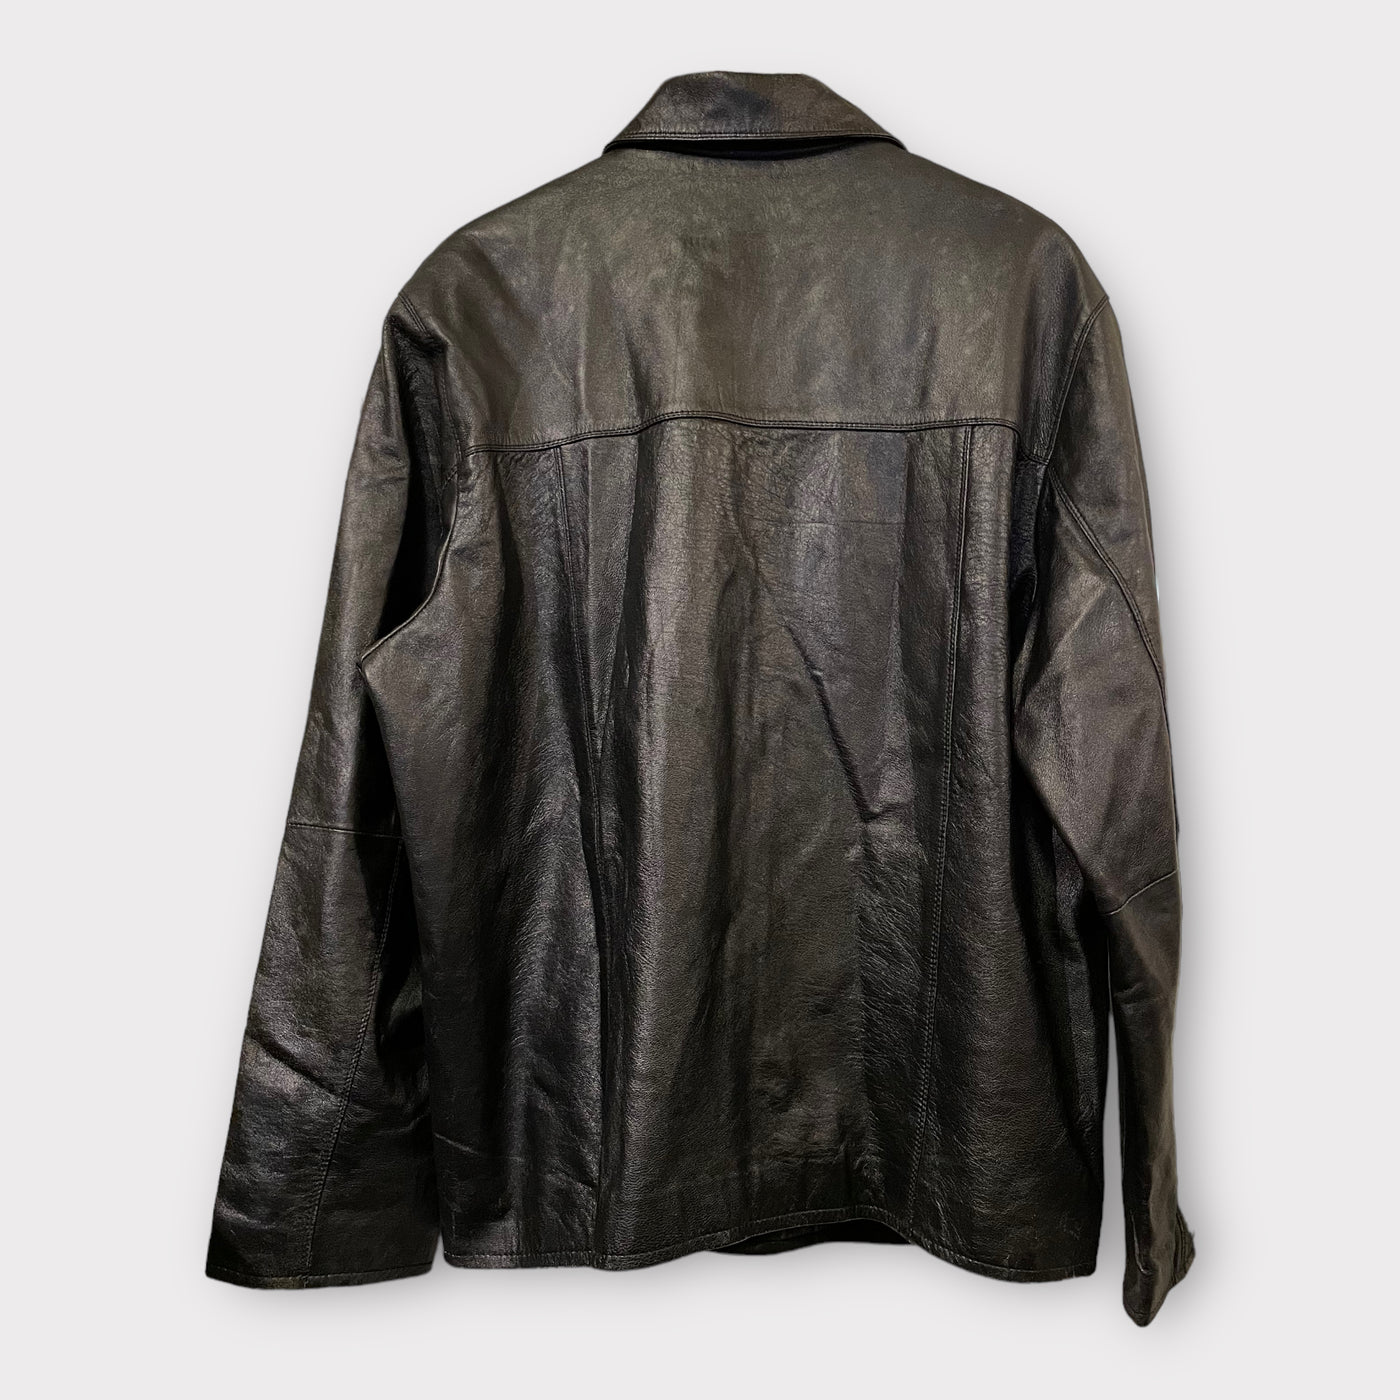 Leather jacket black harrington